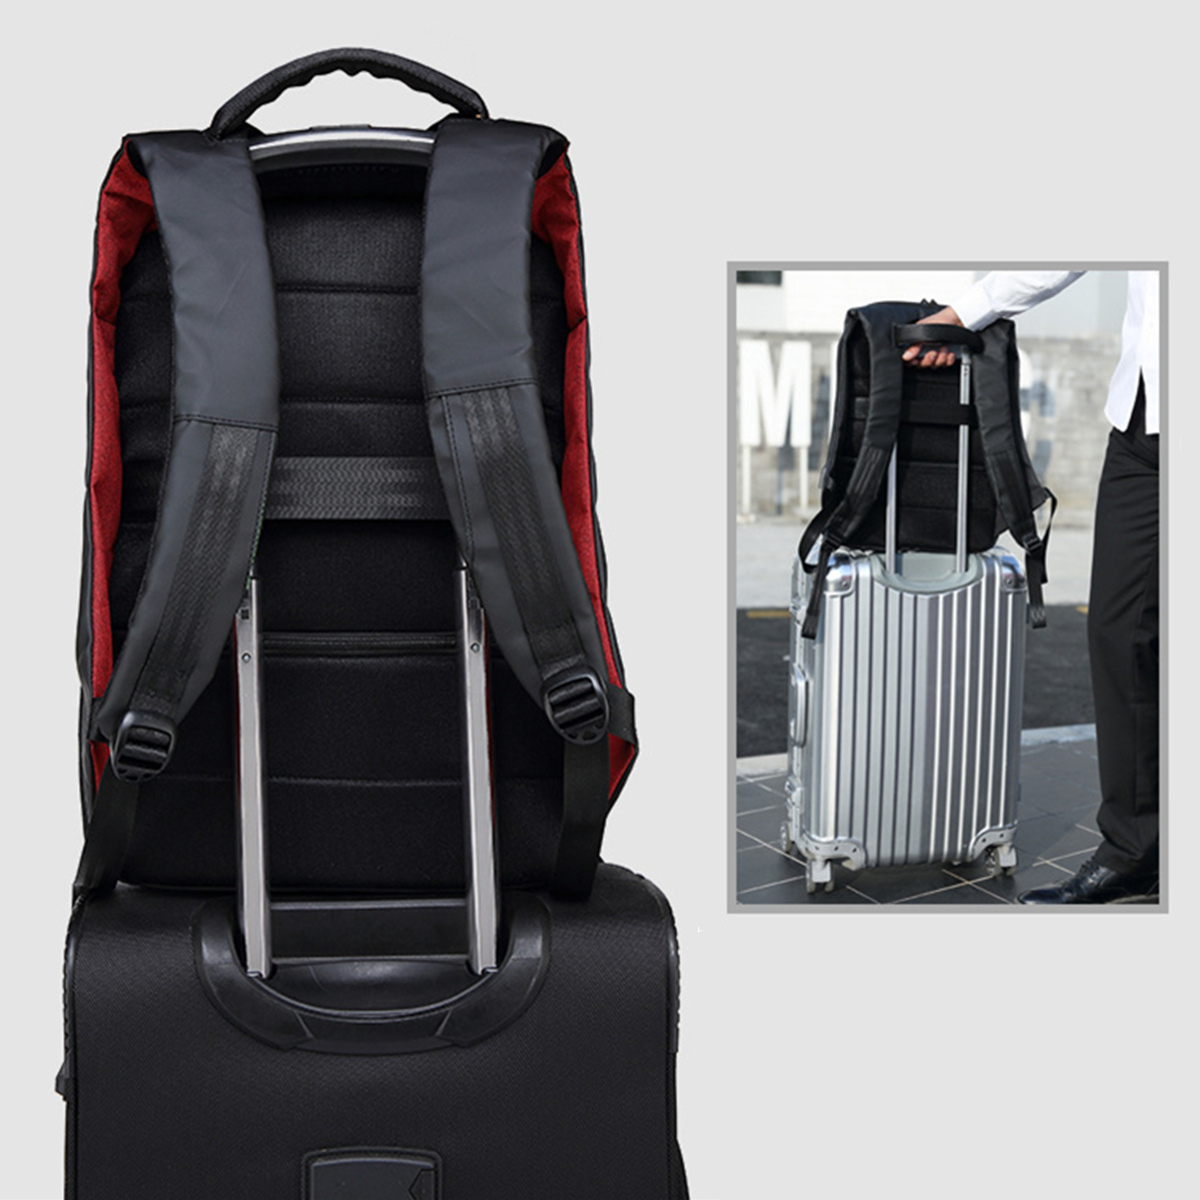 156-Inch-Laptop-Backpack-Bag-Travel-Bag-Student-Bag-With-External-USB-Charging-Port-1288885-6